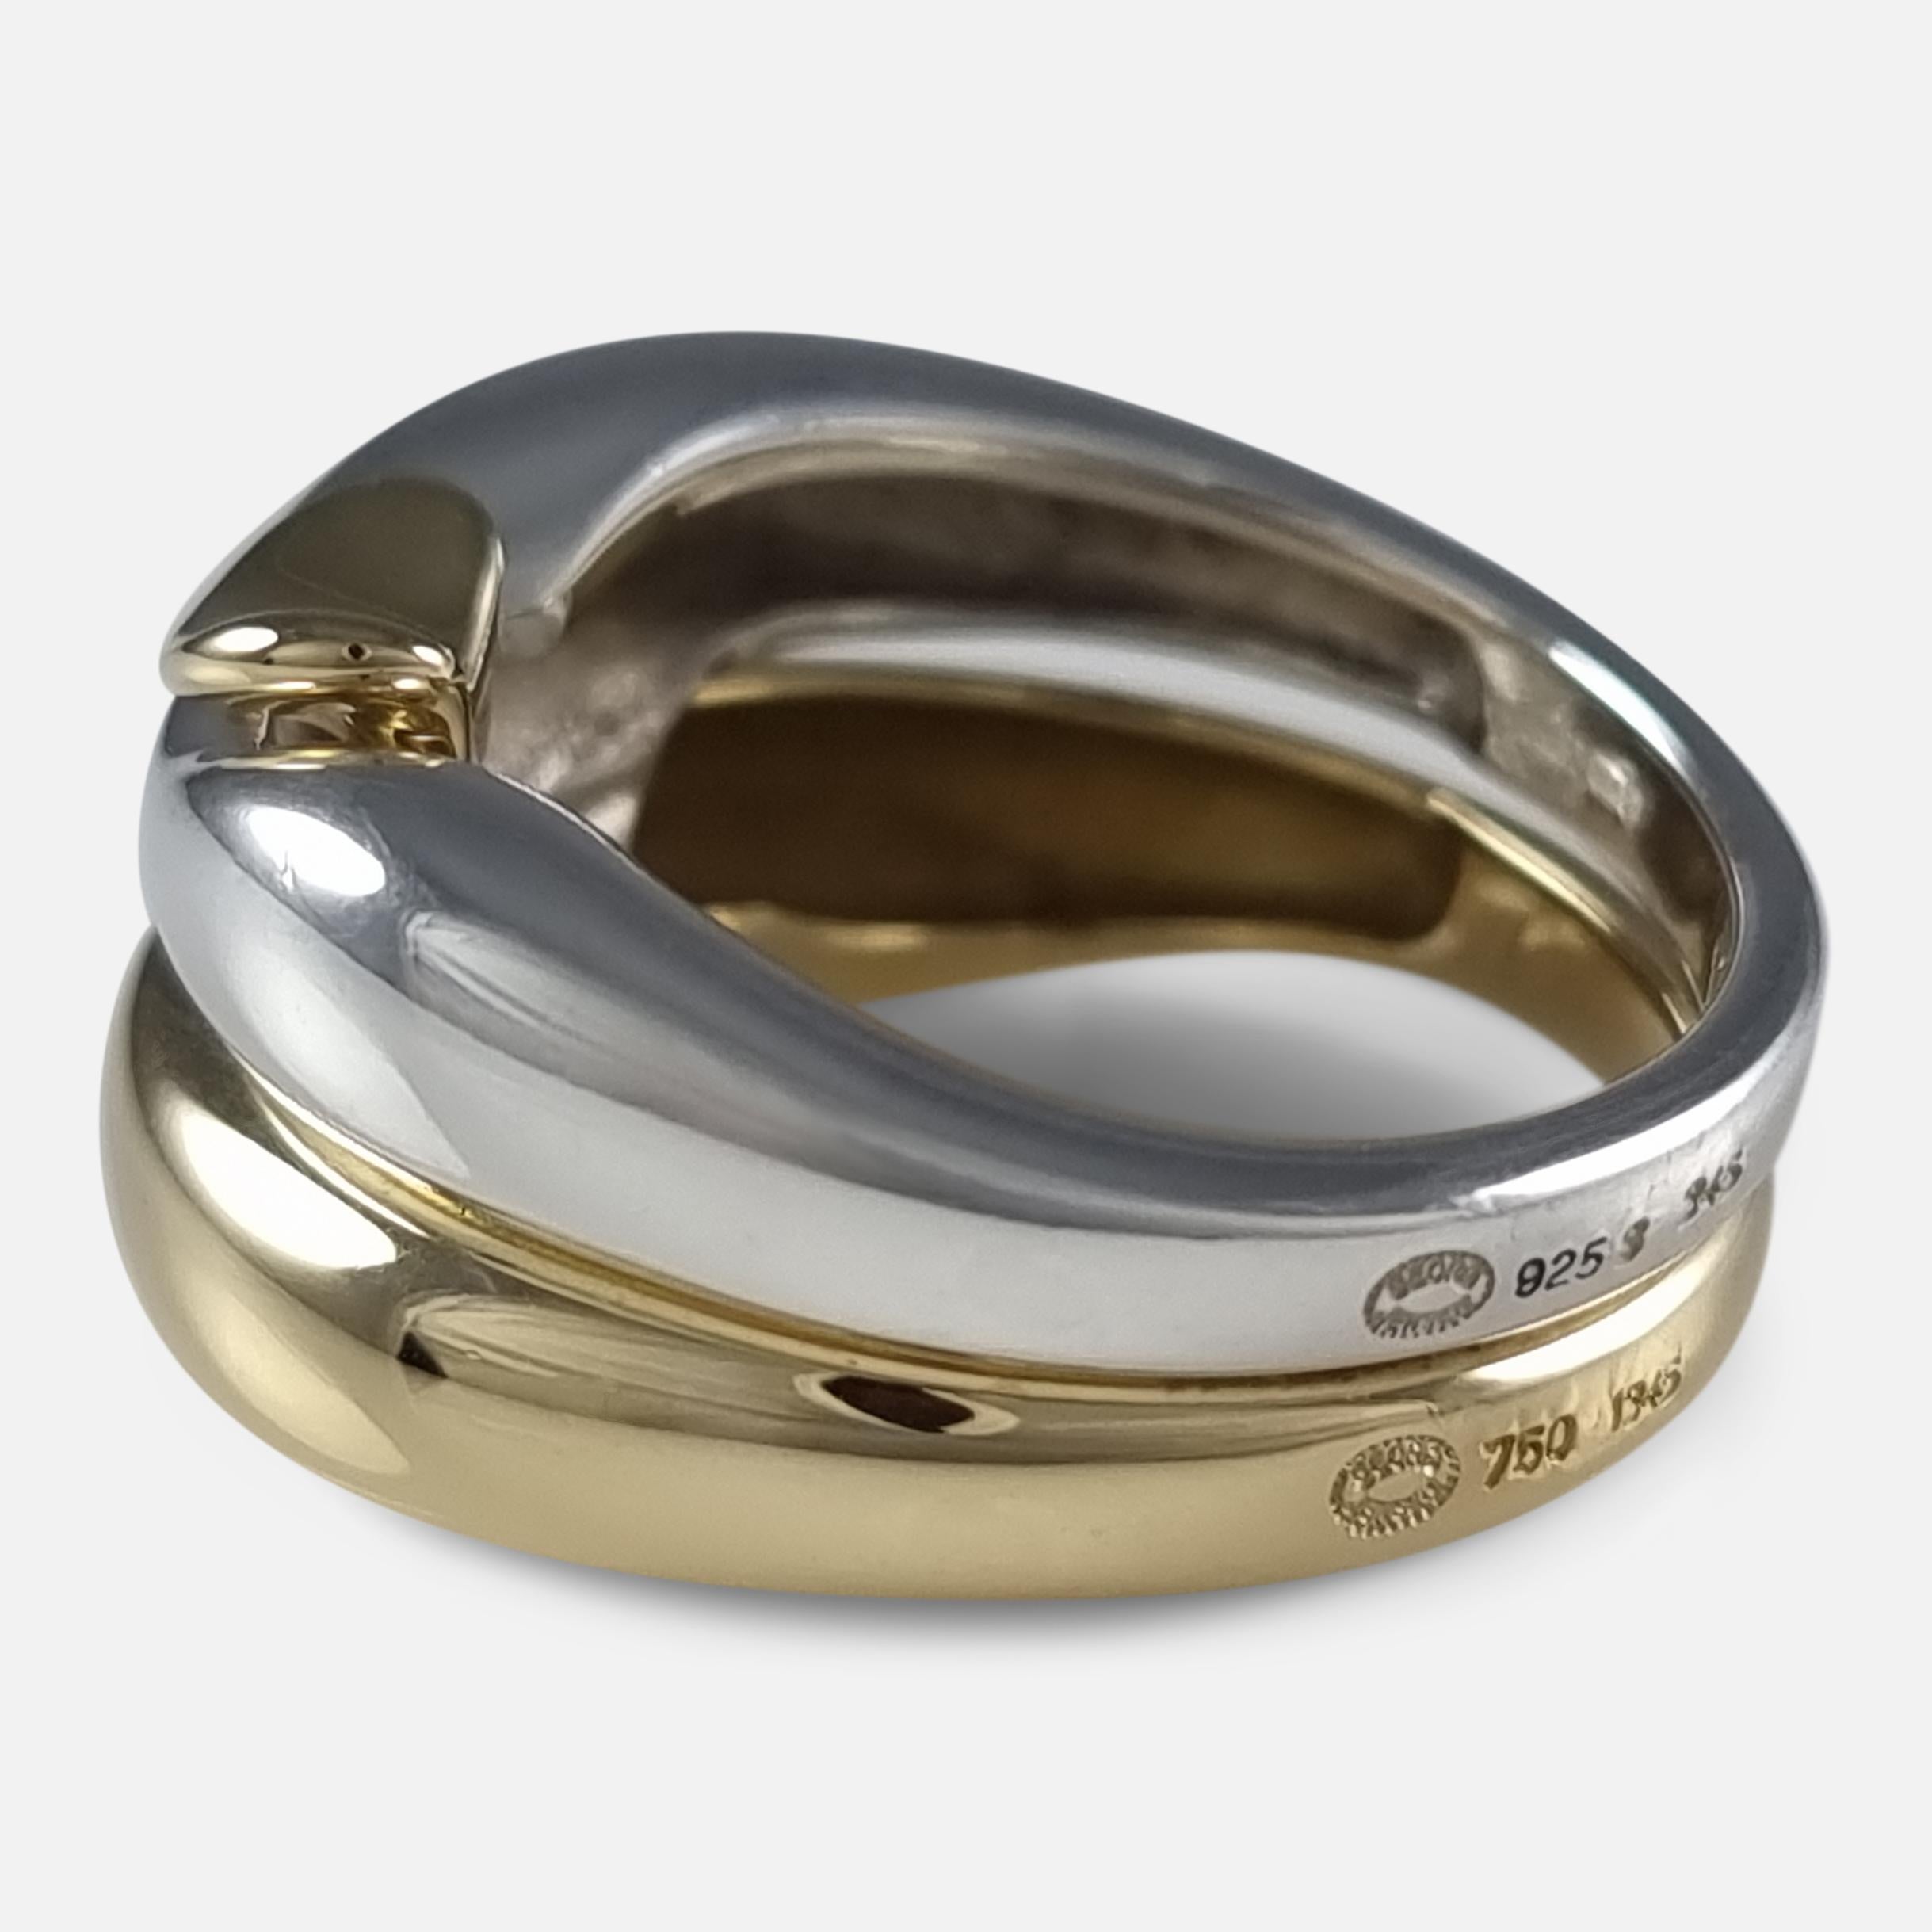 George Jensen 18ct Gold & Silver Ring, Minas Spiridis 1